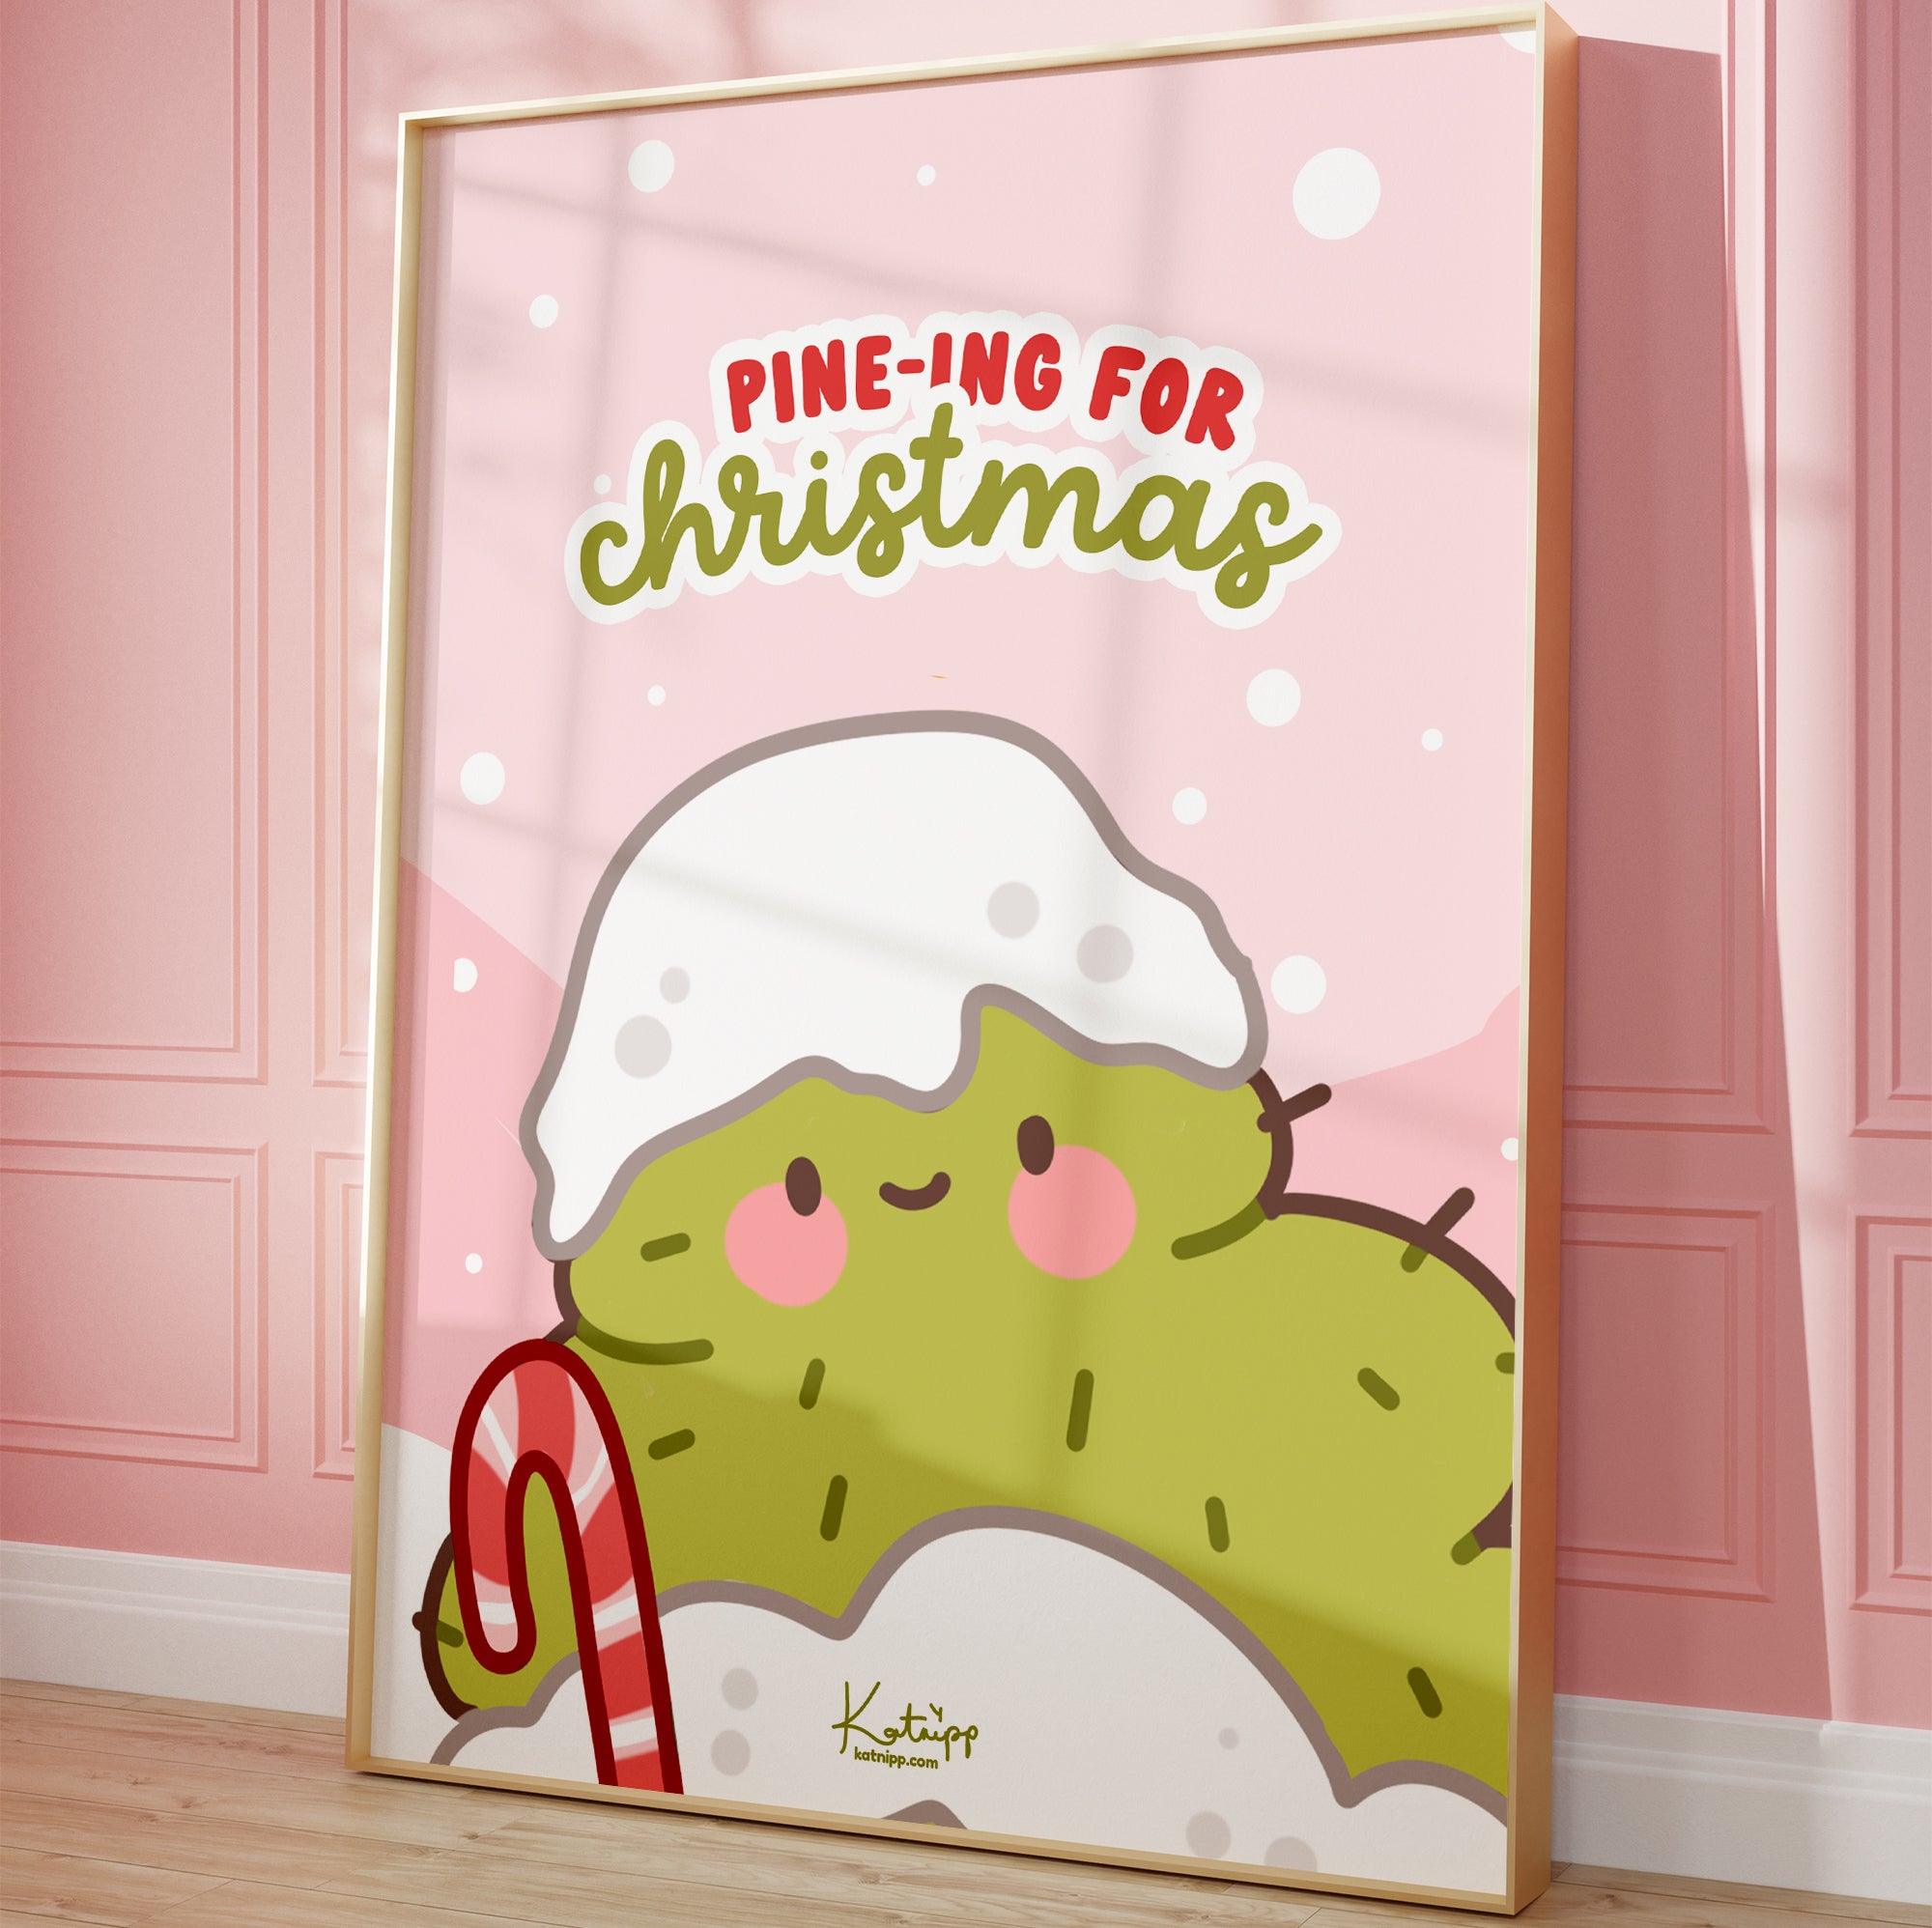 Pine-ing For Christmas, Funny Christmas Wall Art Art Print - Katnipp Studios